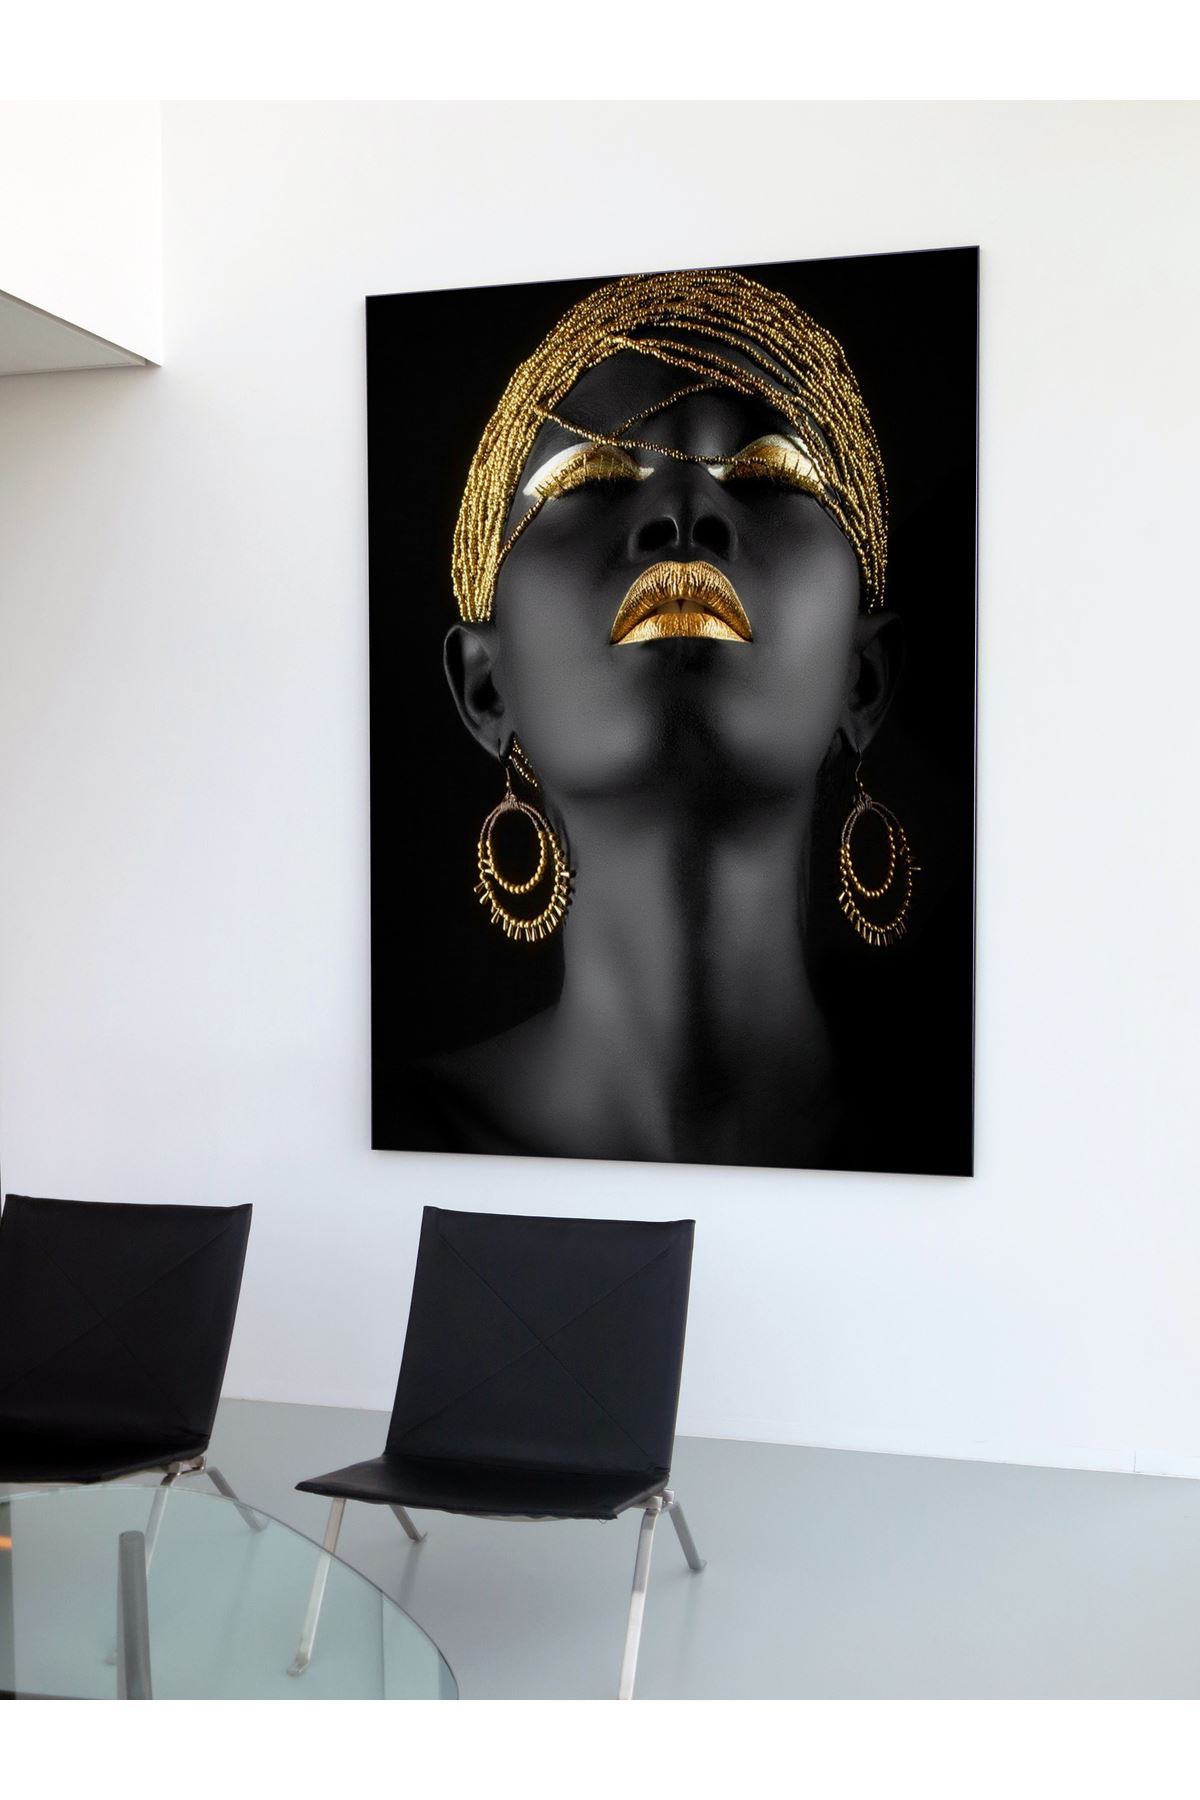 Black Skin Woman And Golden Makeup, Siyah Tenli Kadın Ve Altın Makyaj